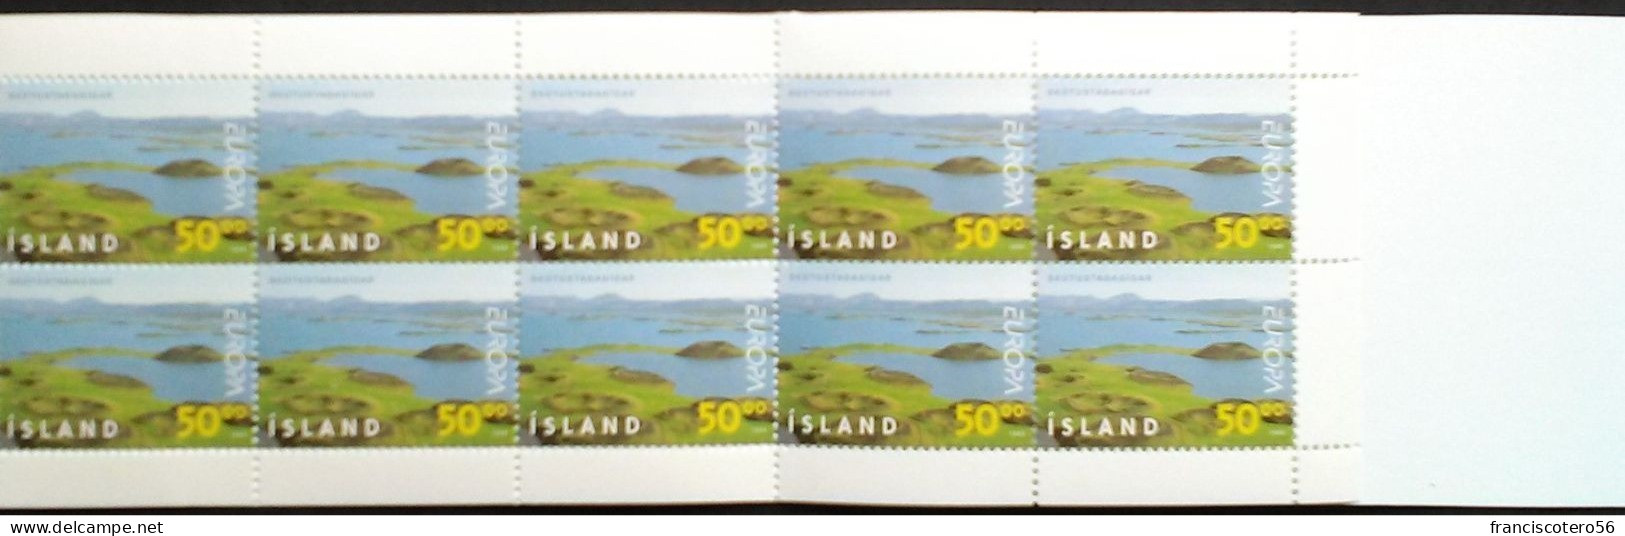 Europa - CEPT: Año. 1999 - Islandia.  2/Carnet. De - 1x10 - (Reservas Y Parques Naturales). - 2000